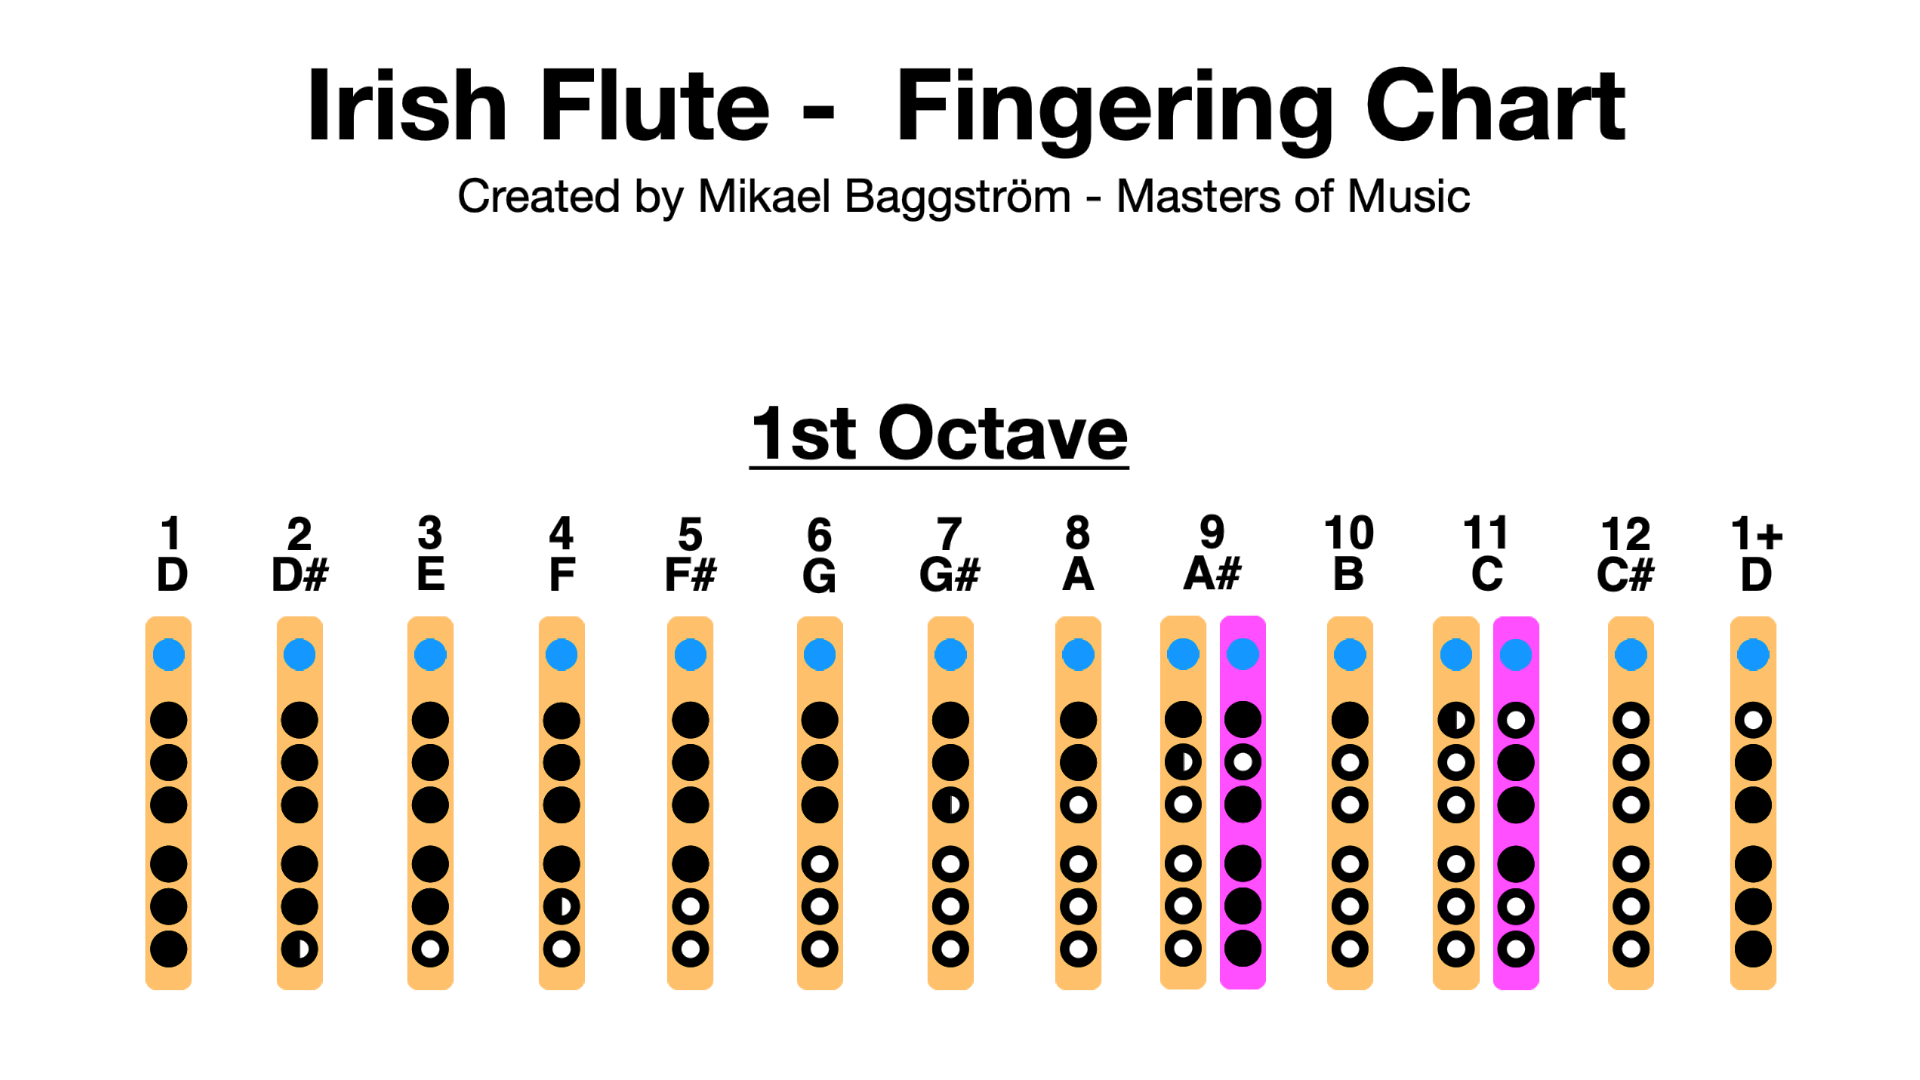 Hot cross buns flute finger chart